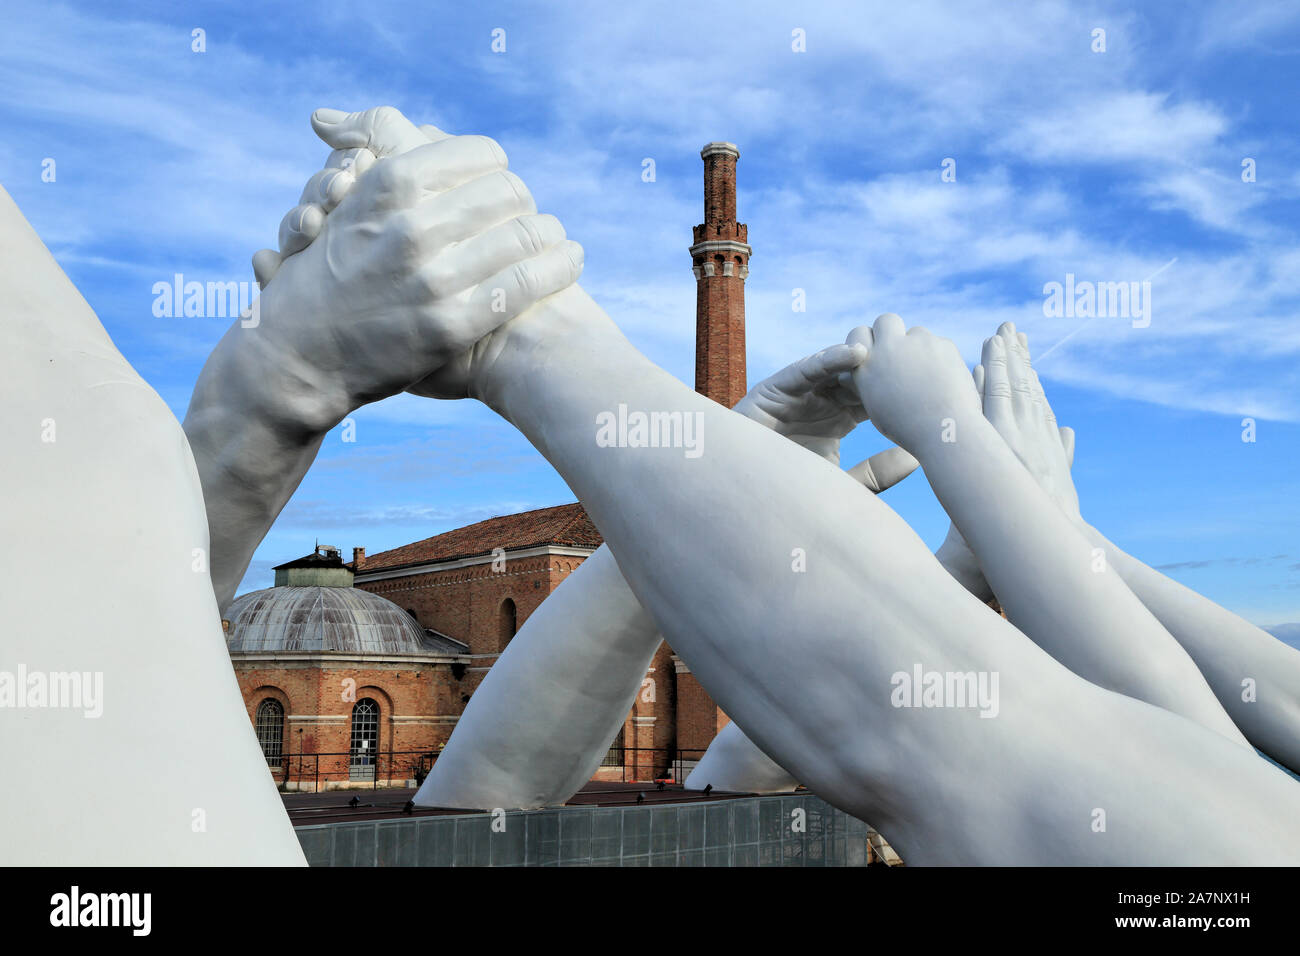 Bienal de Arte de Venecia 2019. Unieron sus manos gigante escultura "tender puentes" por Lorenzo Quinn. Exposición en el Arsenale, Castello, Venecia. Foto de stock